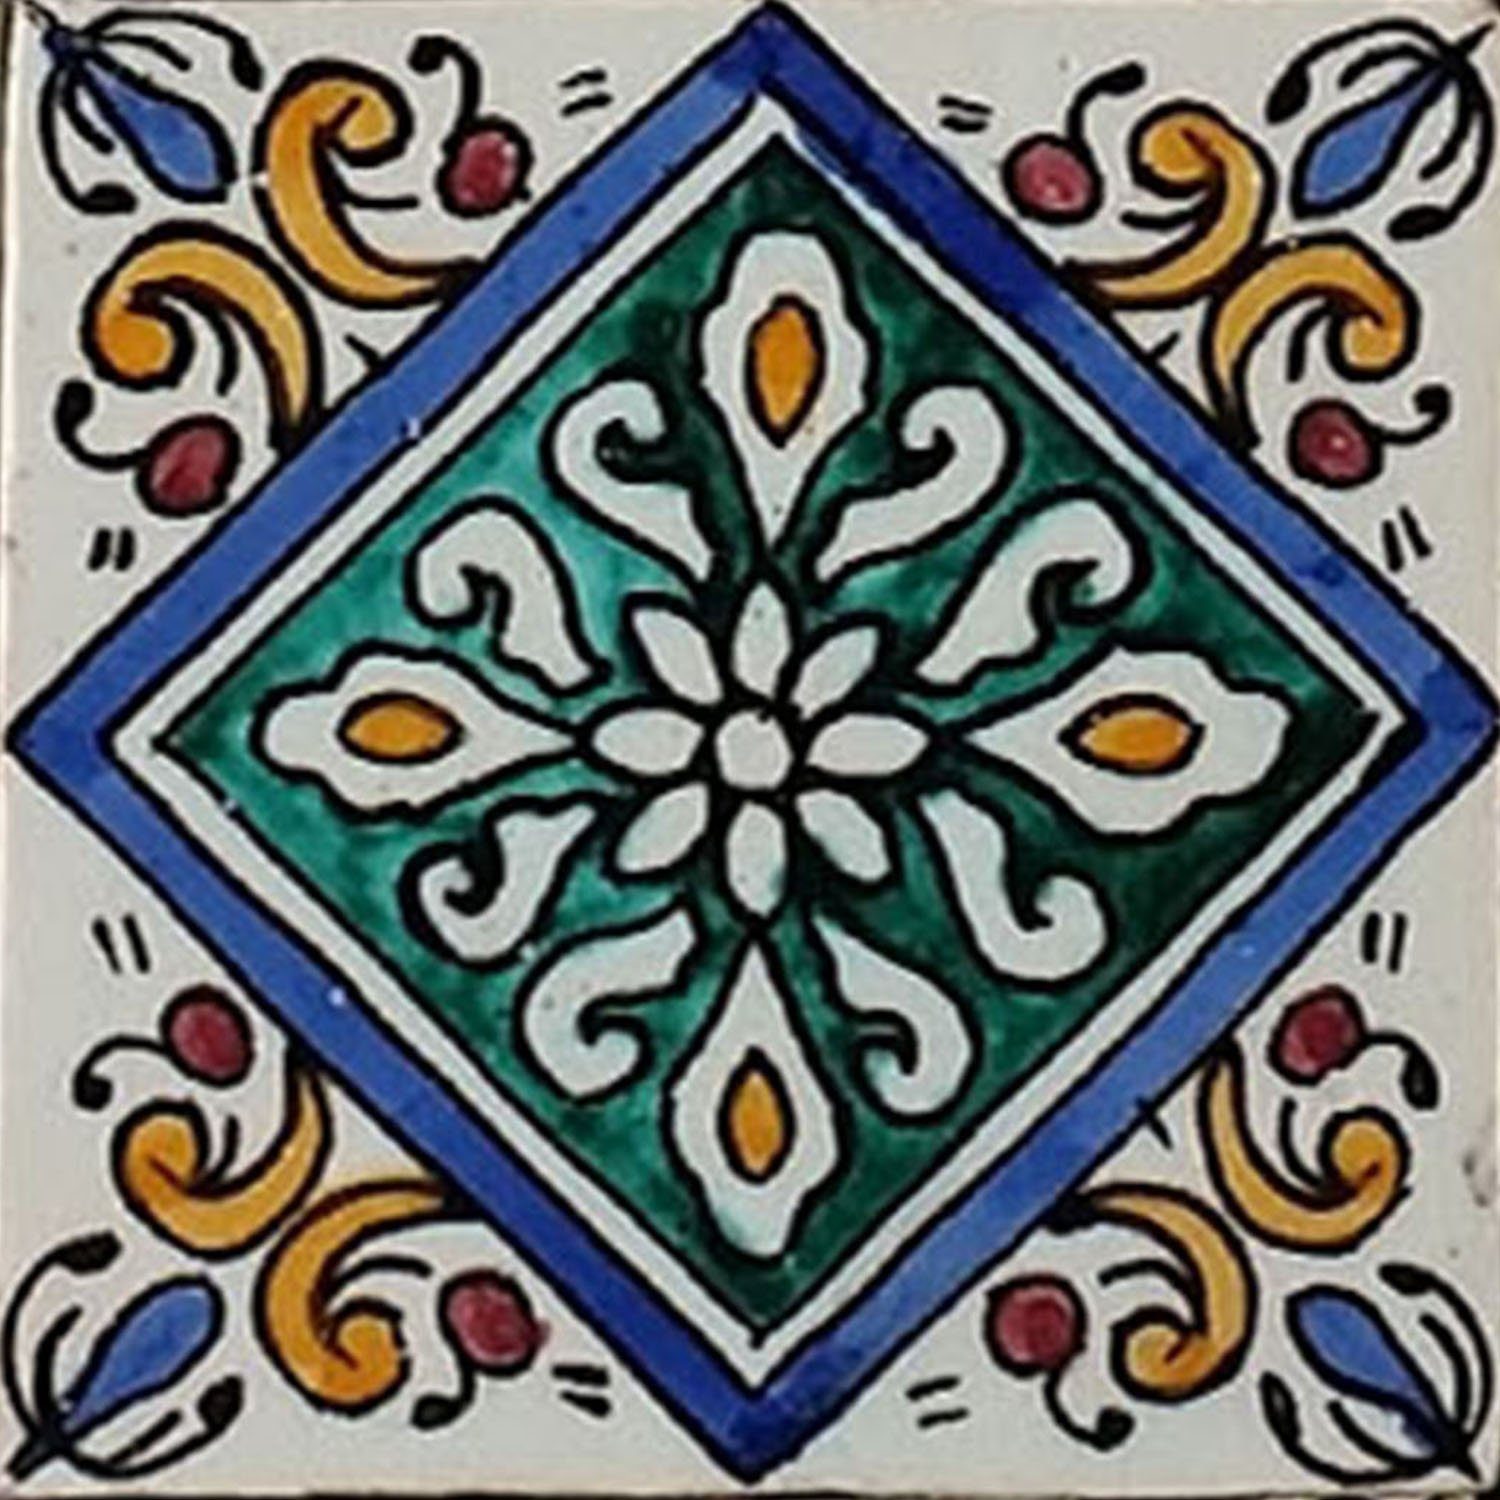 Wandfliese Casa Kunsthandwerk Moro Leys Fliese orientalische schöne Badezimmer, Dusche für aus Casa Keramikfliese HBF8023, handbemalte Küche Marokkanische Mehrfarbig, cm 10x10 Wandfliese bunt, Moro Marokko